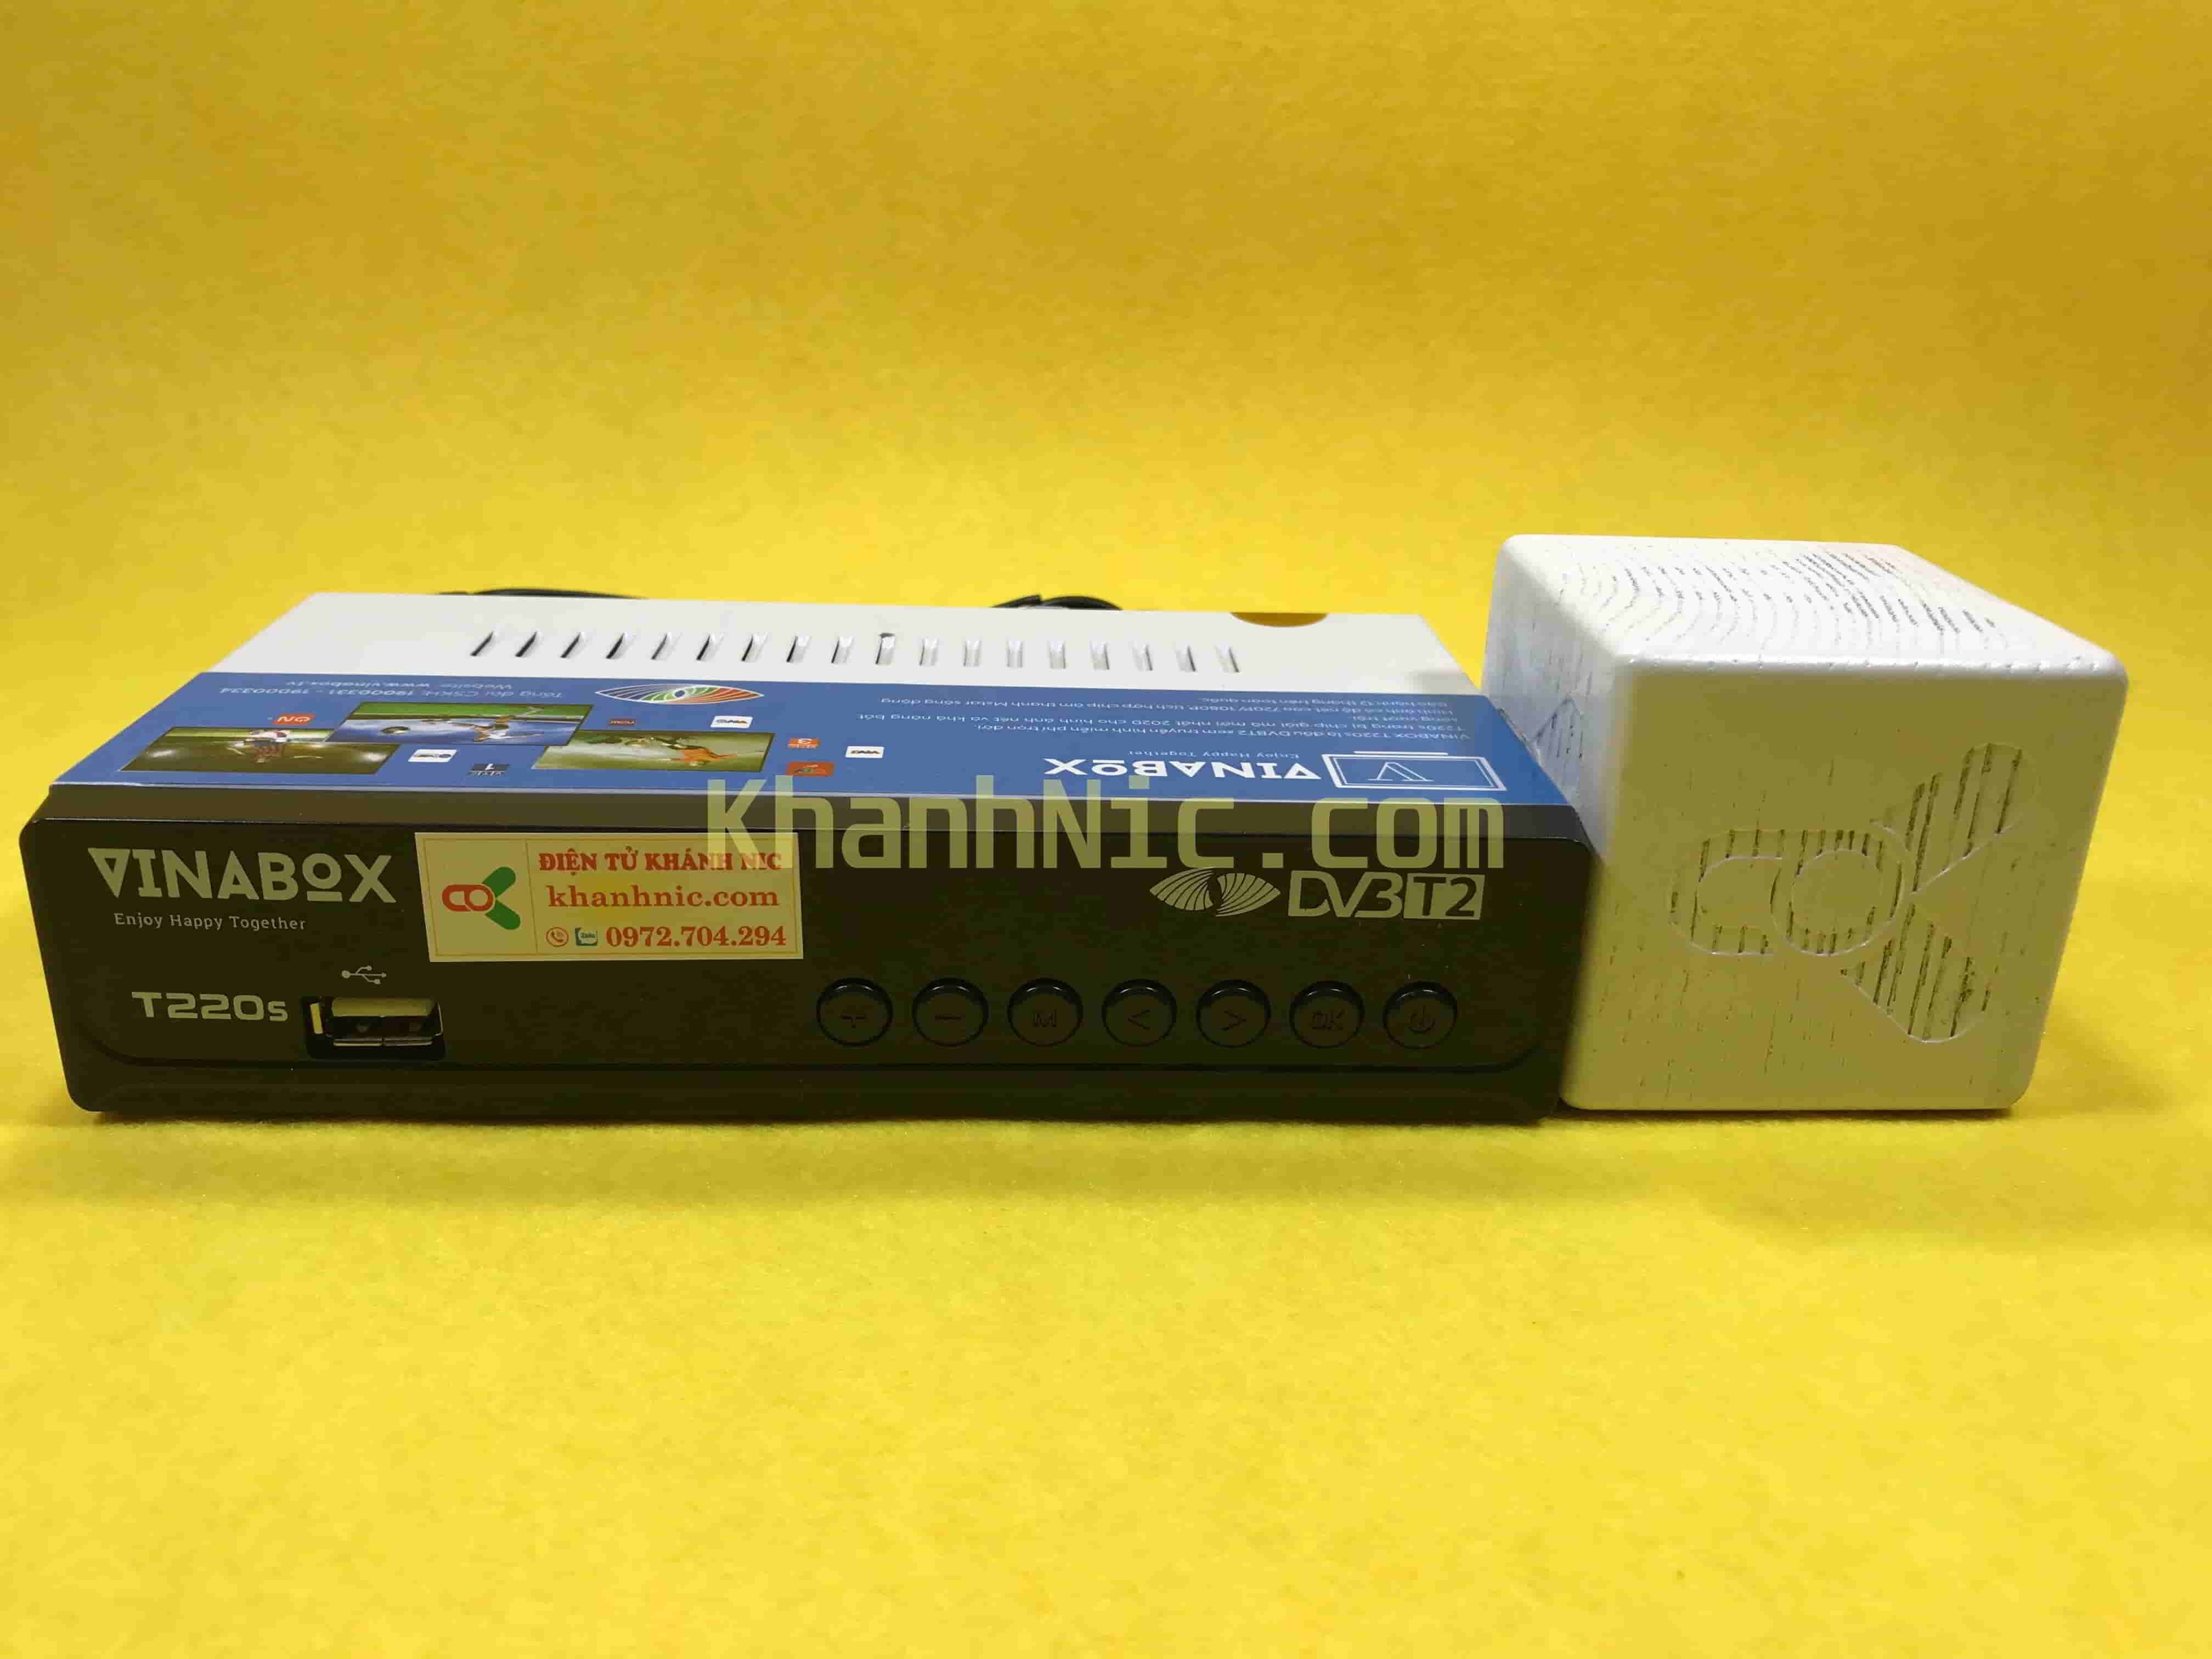 Đầu thu DVB T2 Vinabox T220s xem miễn phí 90 kênh | Khánh Nic